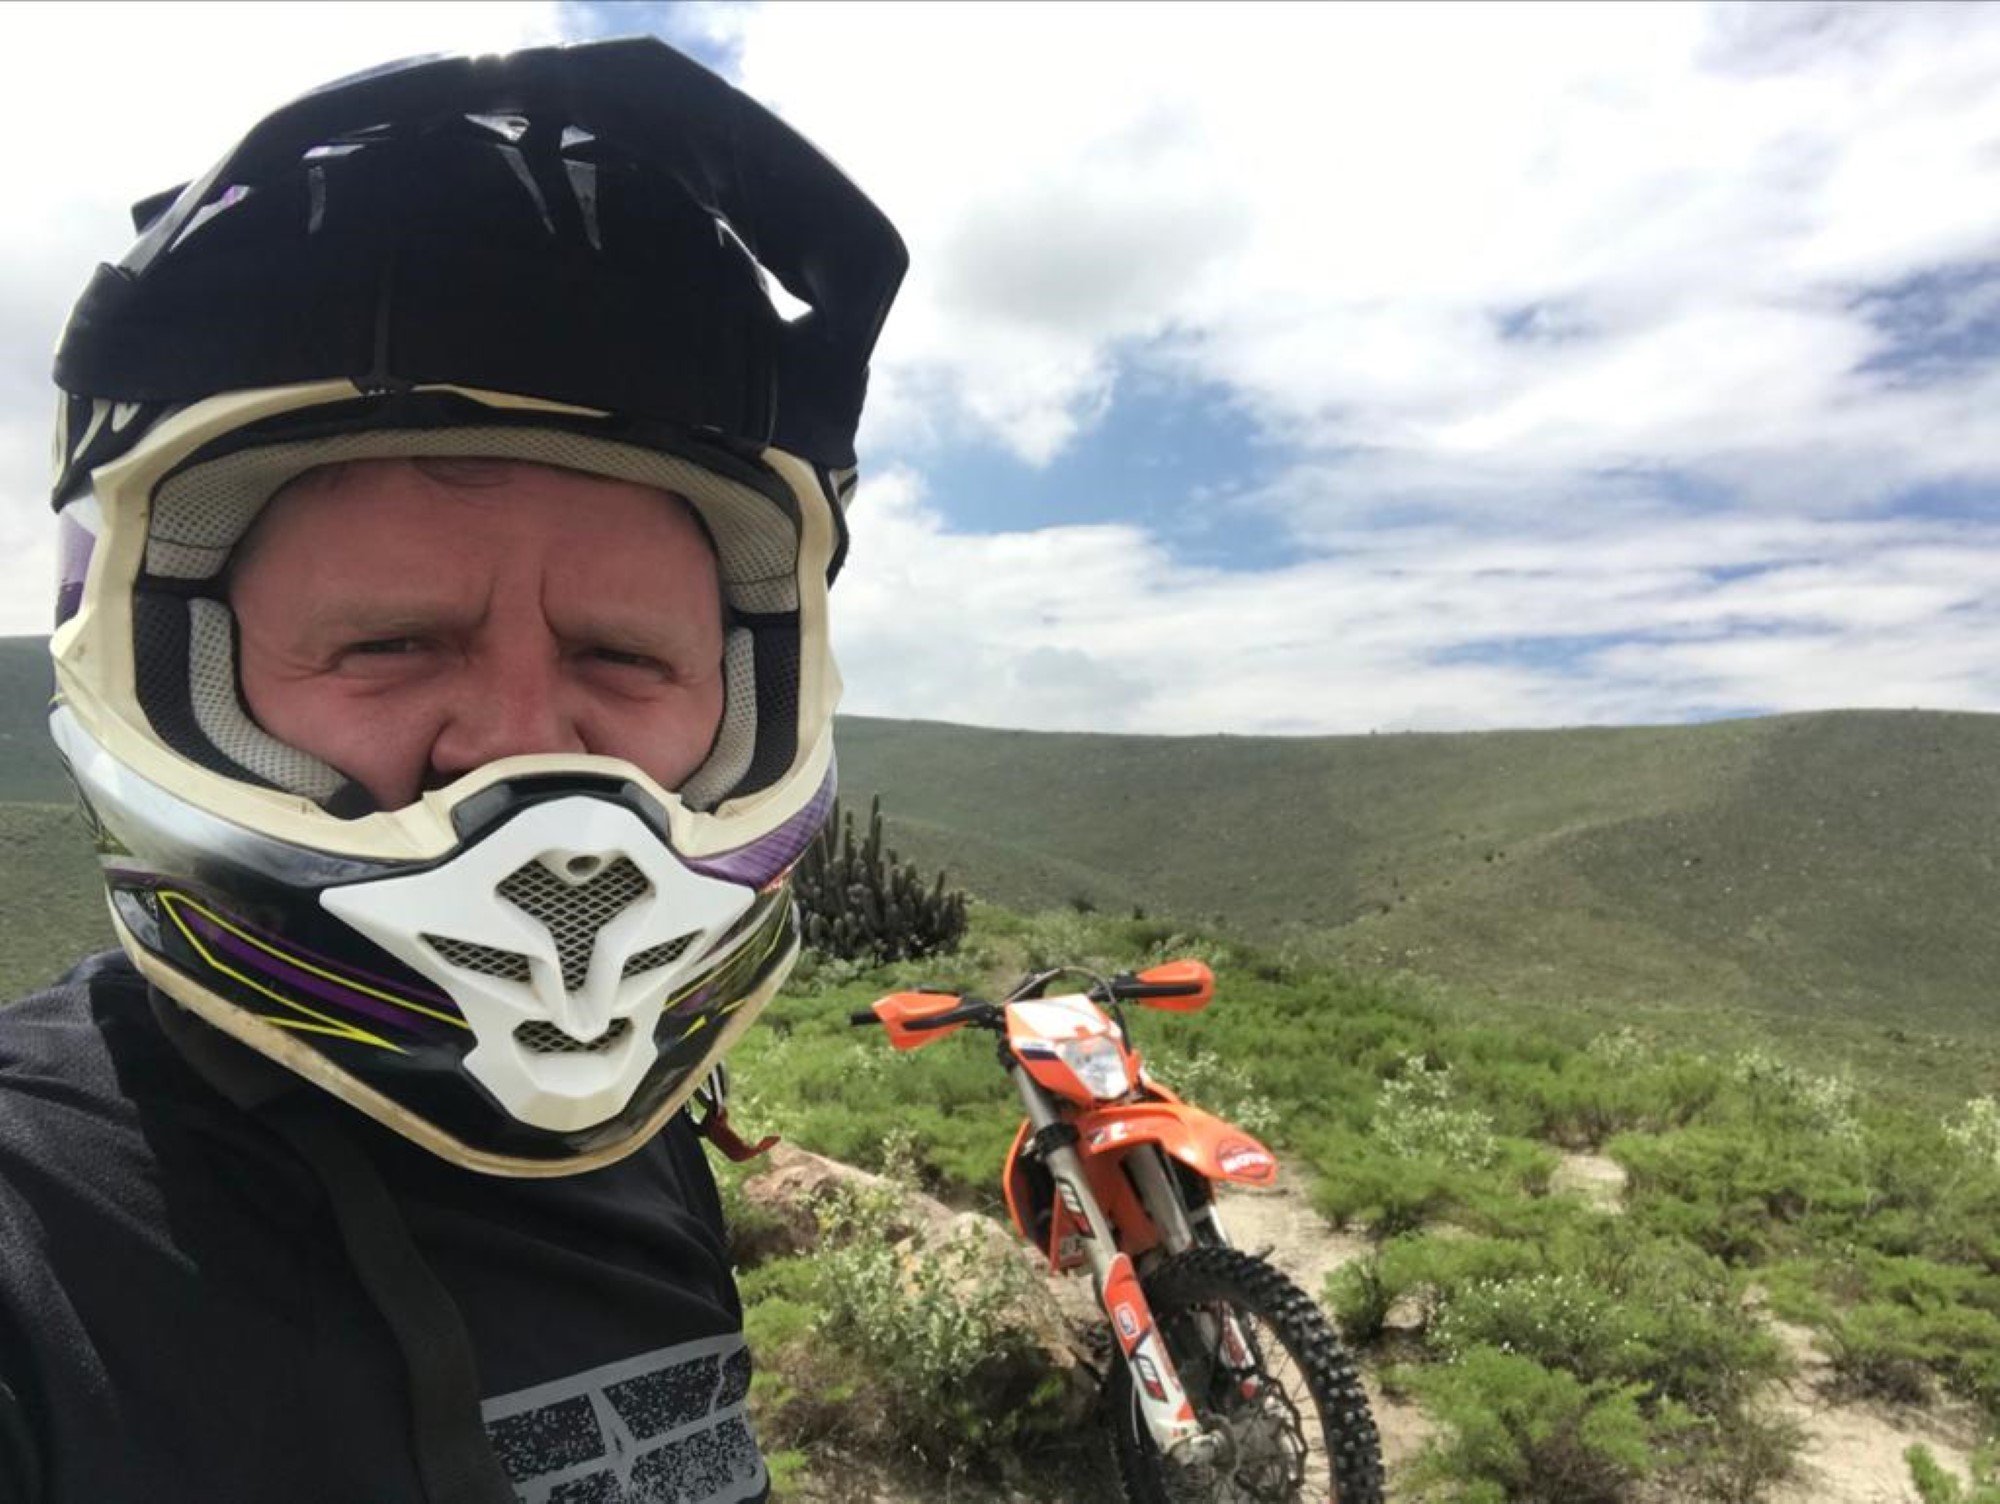 Da Svein Harald flyttet til Peru kjøpte han seg en motorcross-sykkel, og det har han hatt mye glede av.